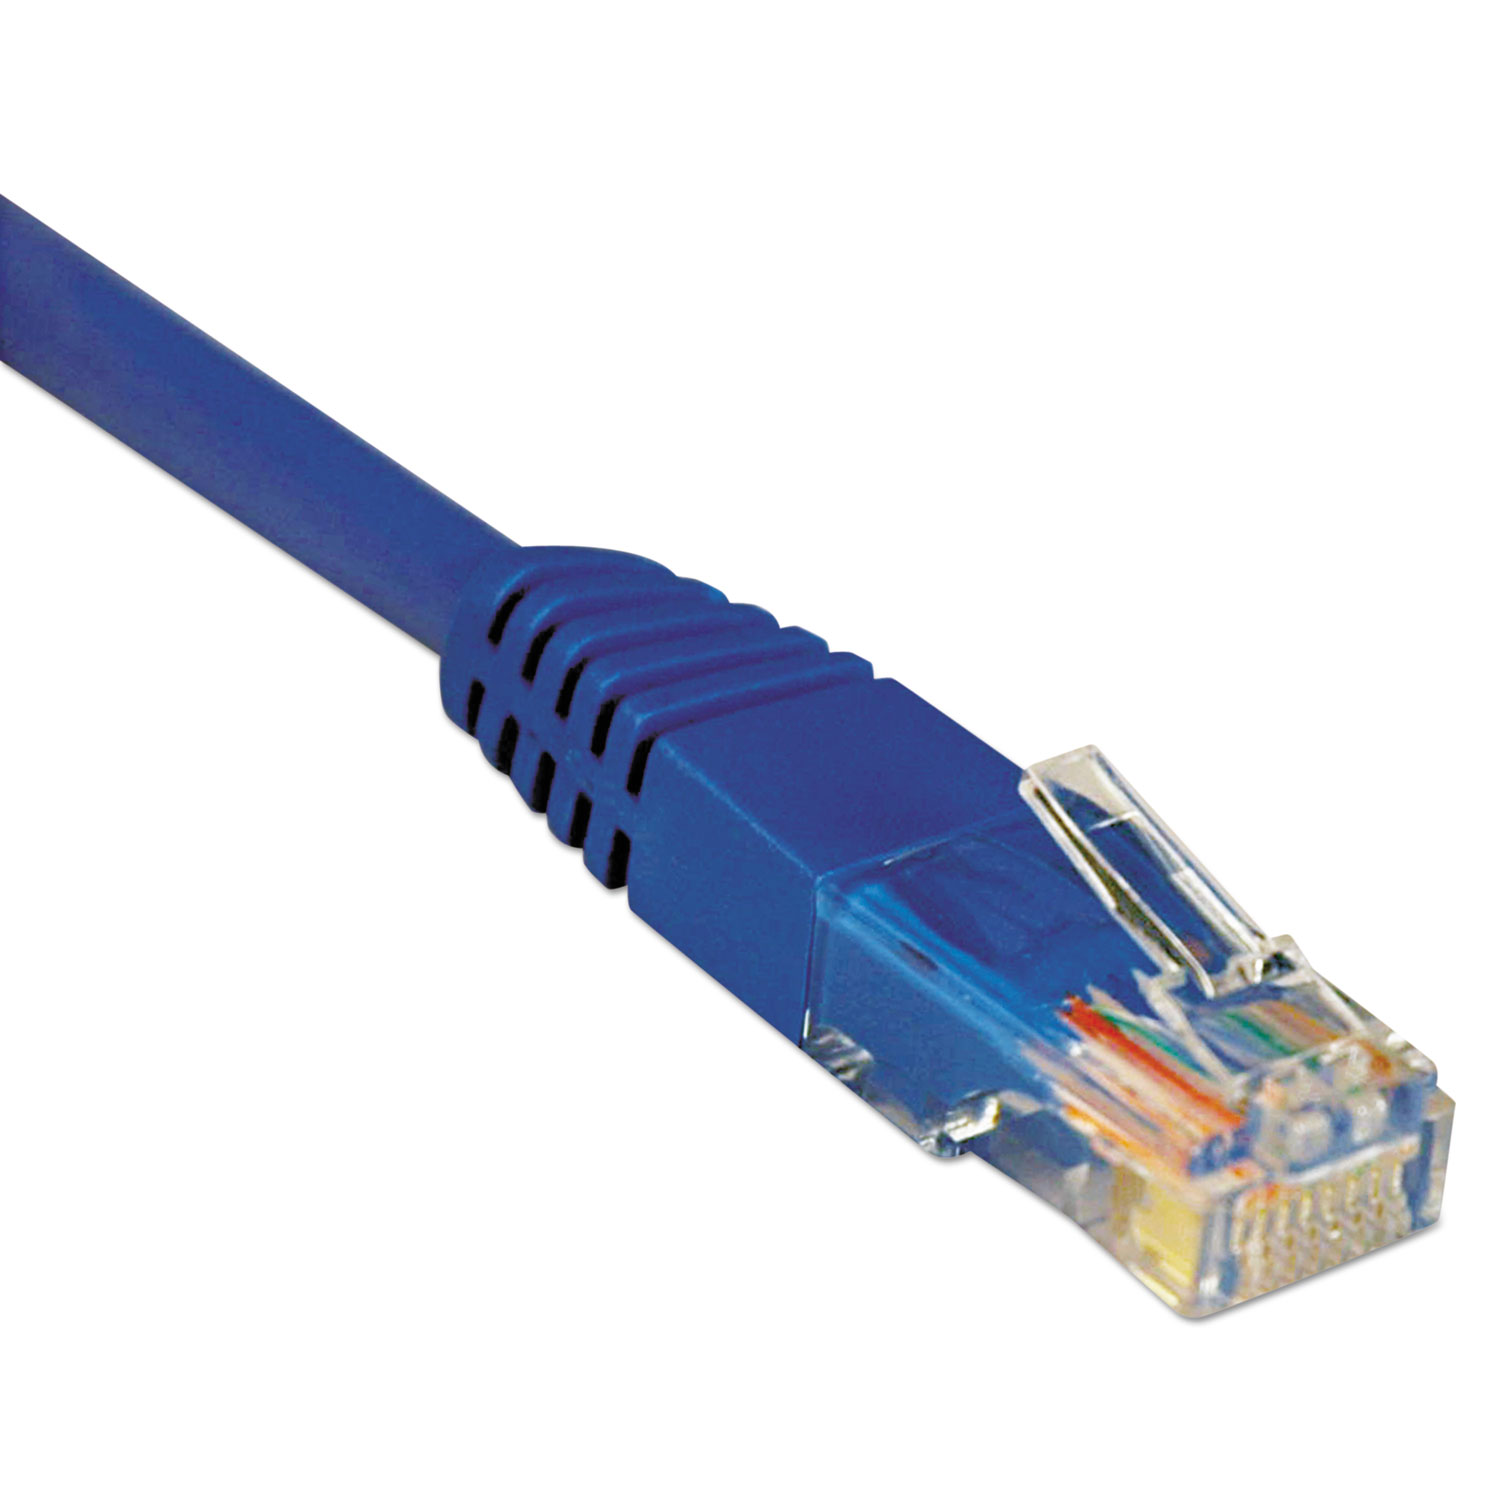  Tripp Lite N002-100-BL Cat5e 350MHz Molded Patch Cable, RJ45 (M/M), 100 ft., Blue (TRPN002100BL) 